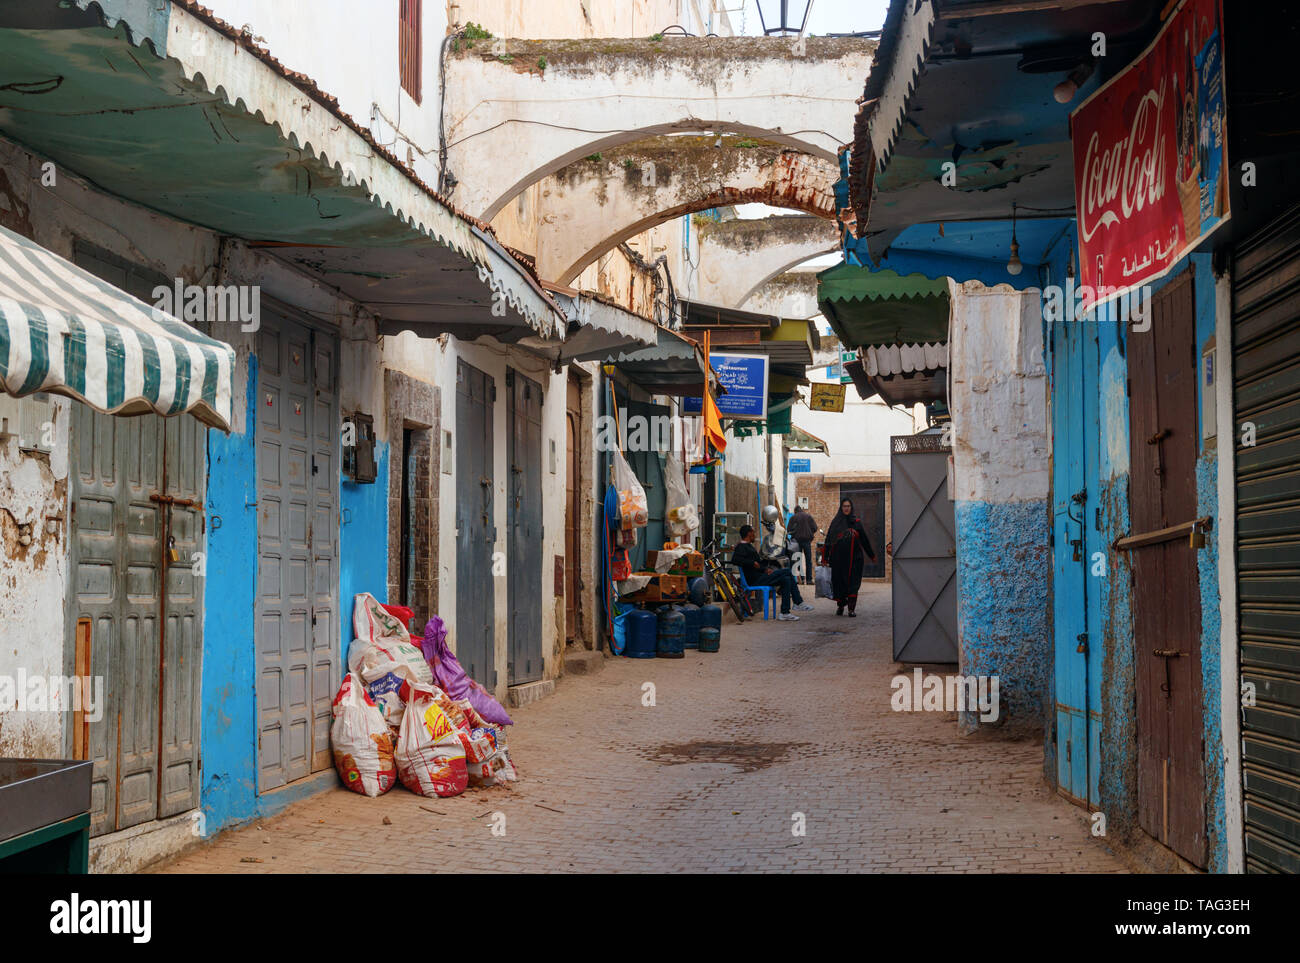 Schmale Straße mit Geschäften und blau und weiß gestrichenen Häusern in der alten Medina von Rabat. Rabat, Marokko. Stockfoto